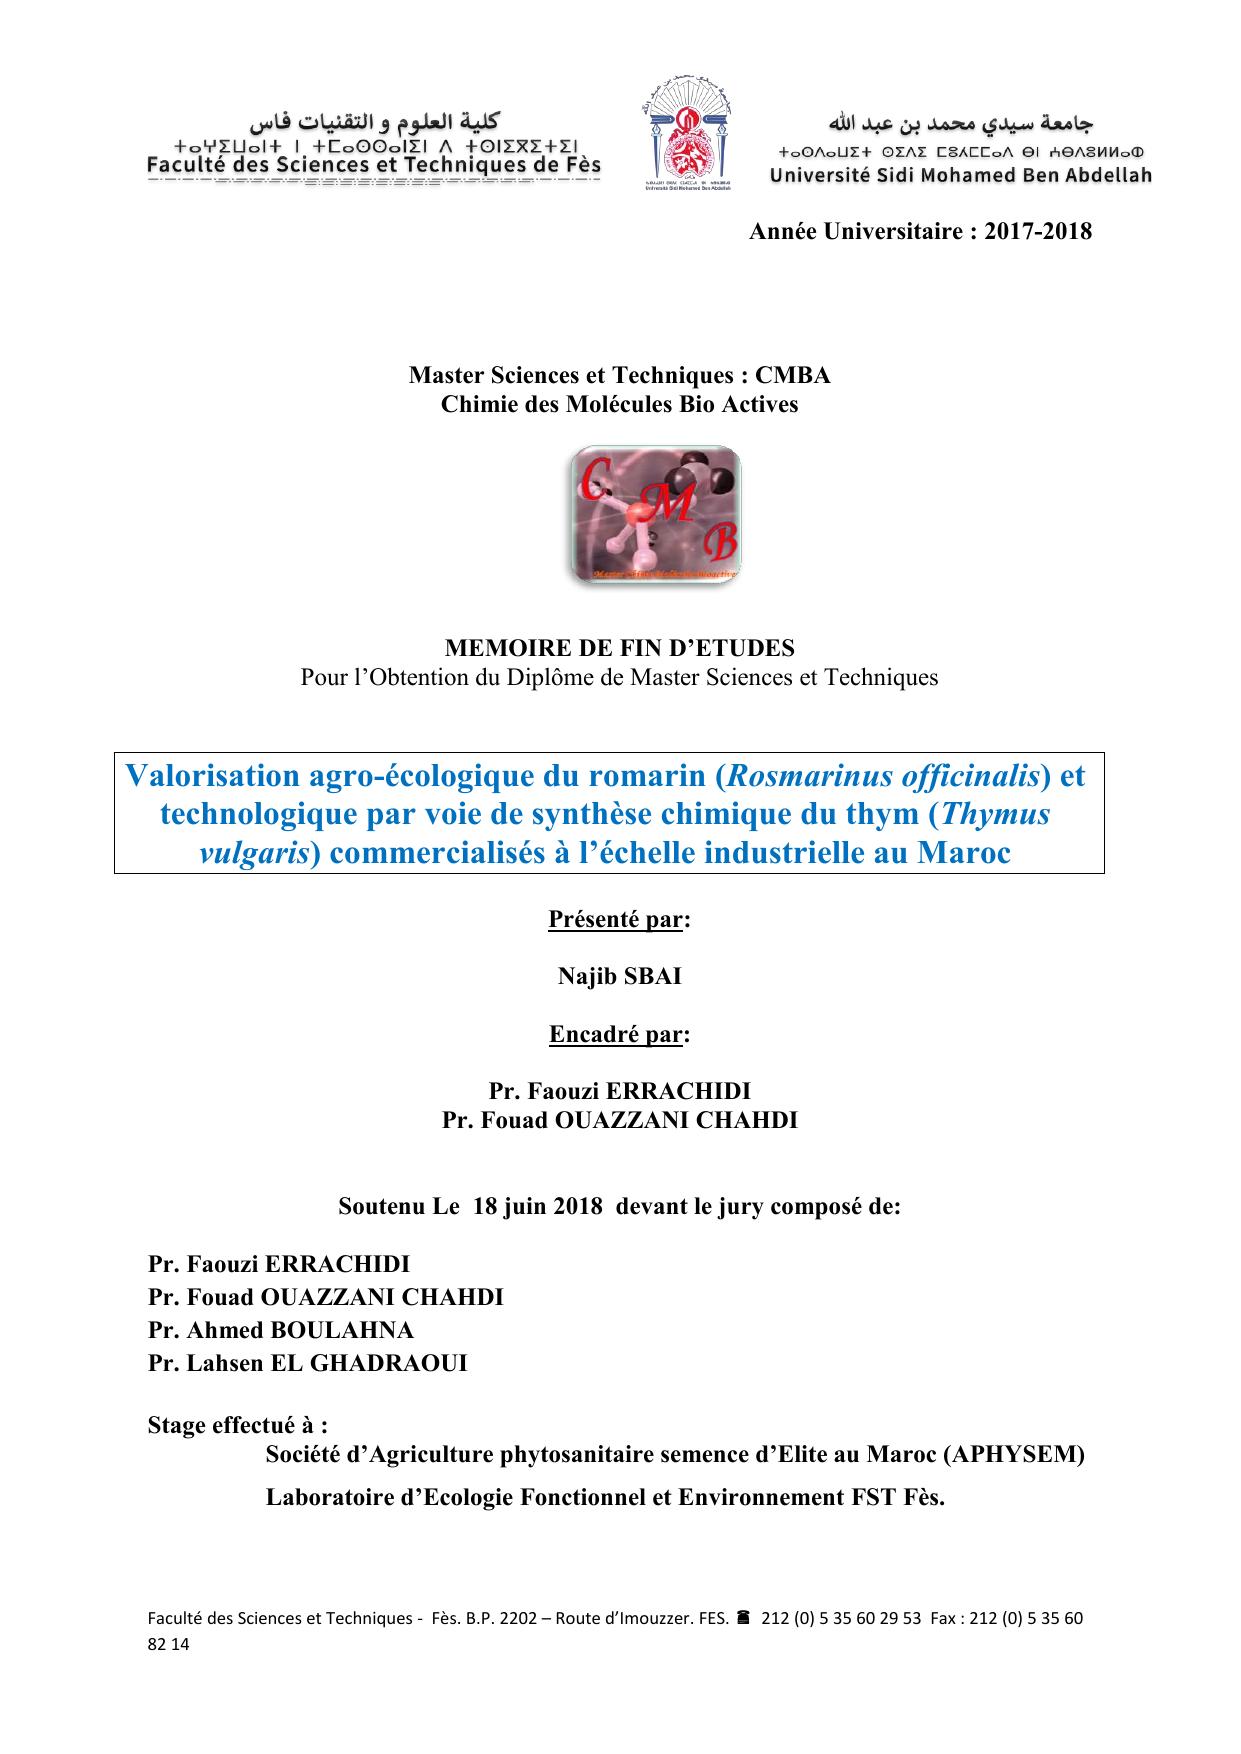 Valorisation agro-écologique du romarin (Rosmarinus officinalis) et technologique par voie de synthèse chimique du thym (Thymus vulgaris) commercialisés à l’échelle industrielle au Maroc